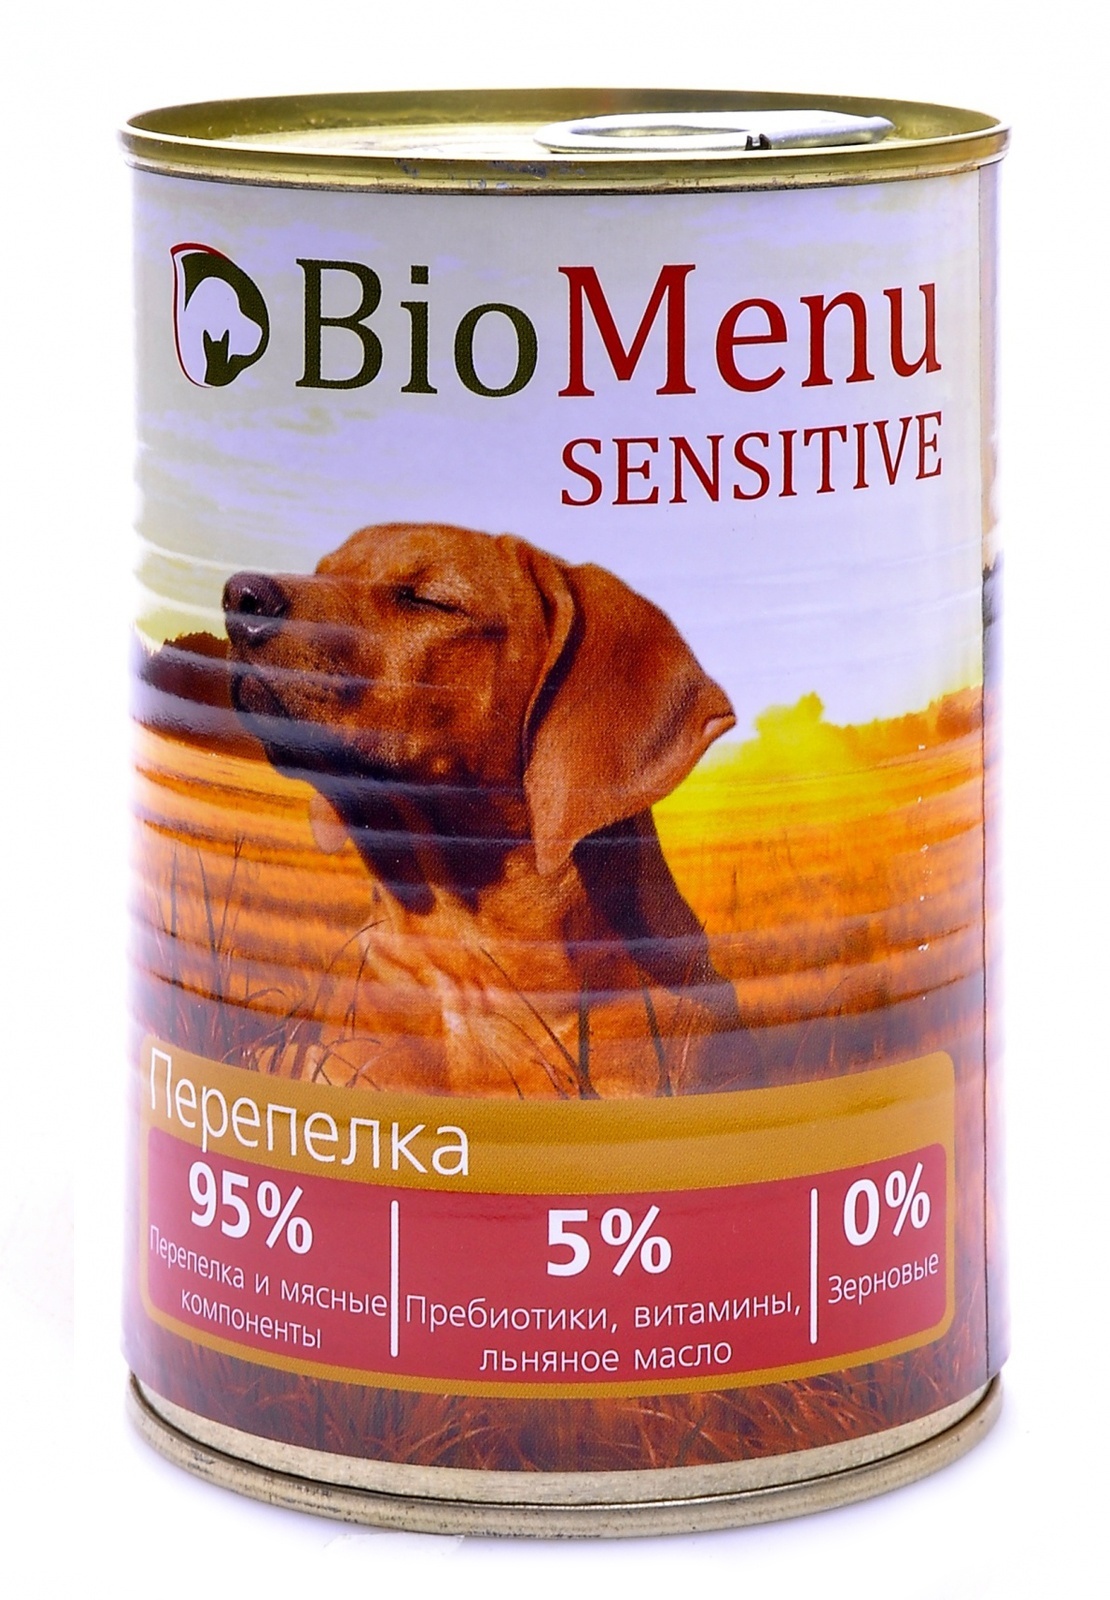 BioMenu BioMenu гипоаллергенные консервы для собак перепелка (410 г) biomenu biomenu консервы для собак с говядиной 100 г